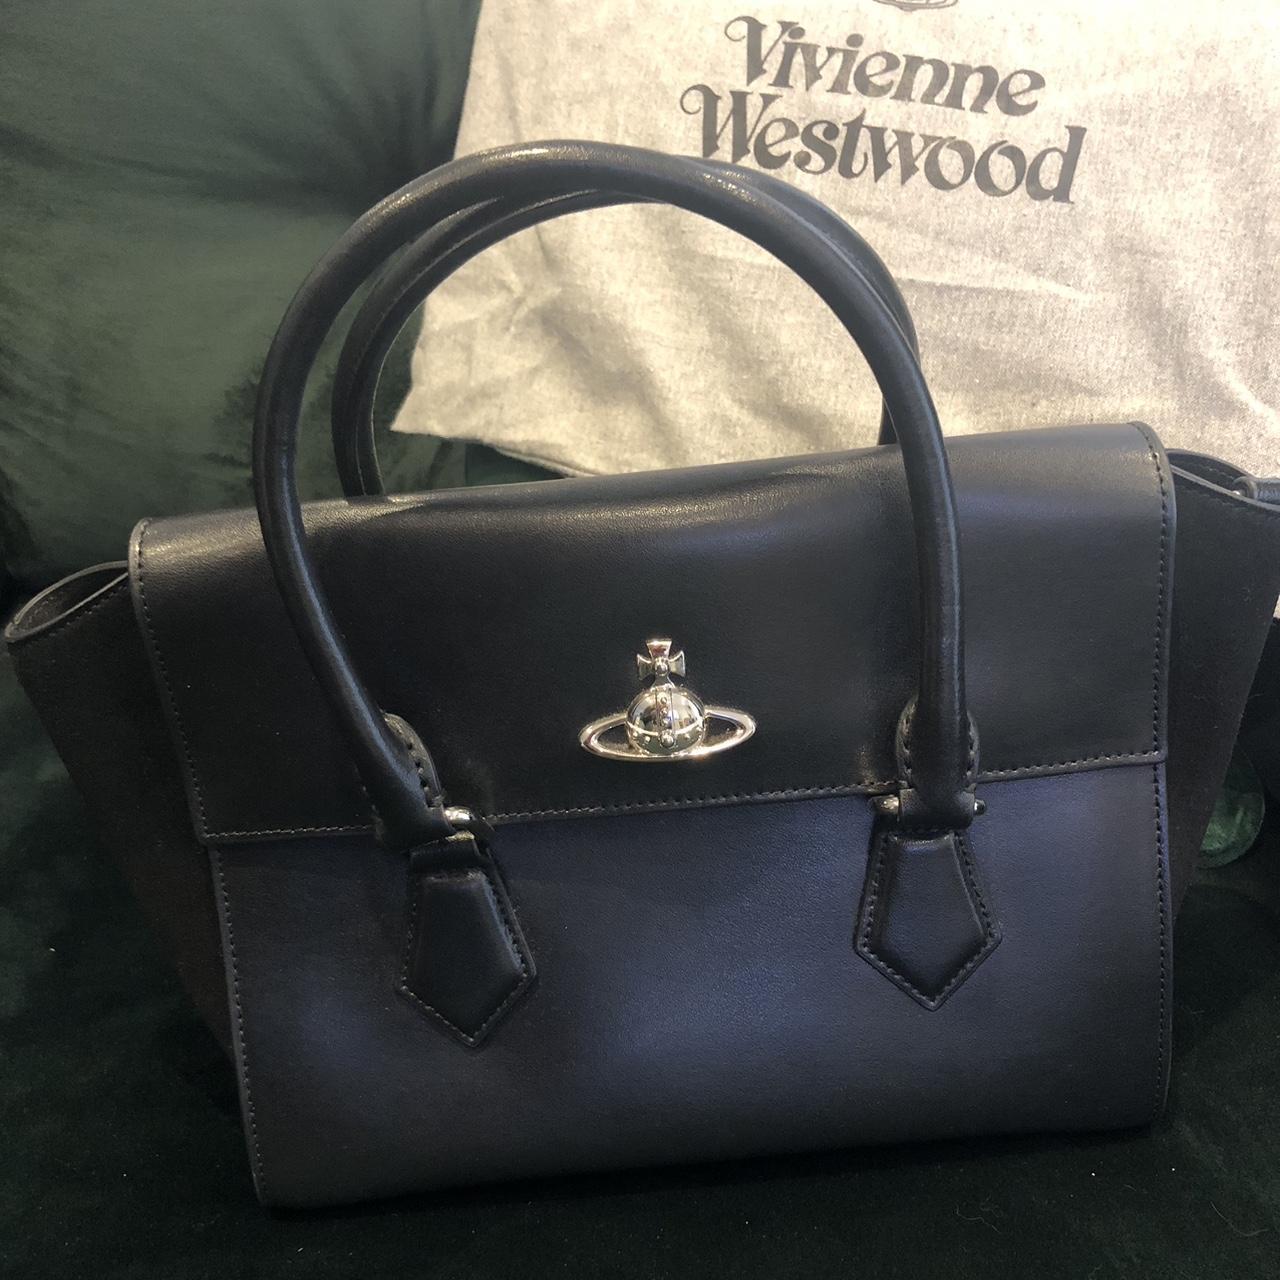 Vivienne Westwood (genuine) handbag, never used... - Depop